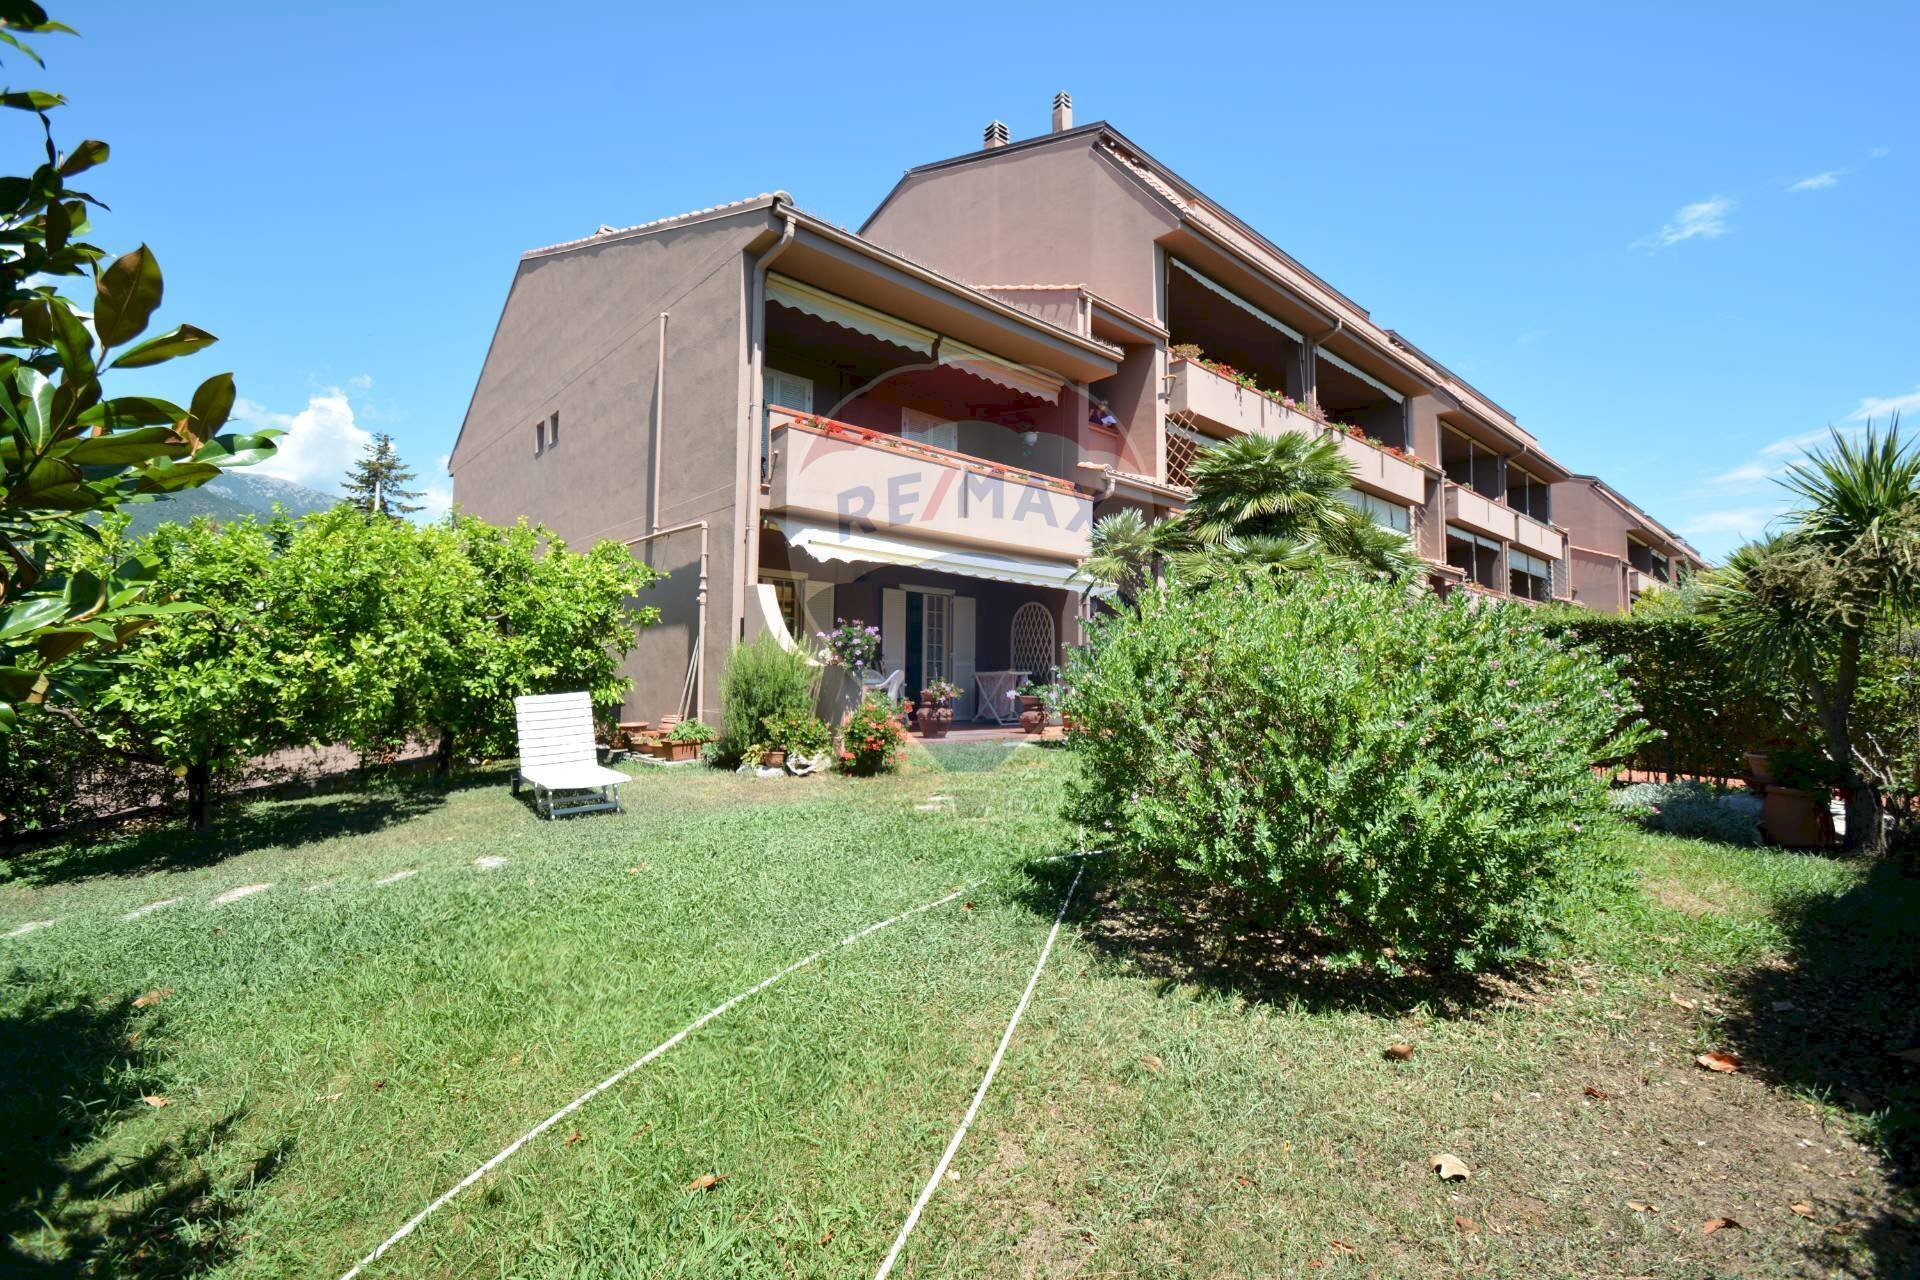 Vendita Appartamento via isonzo, 63
Loano, Loano